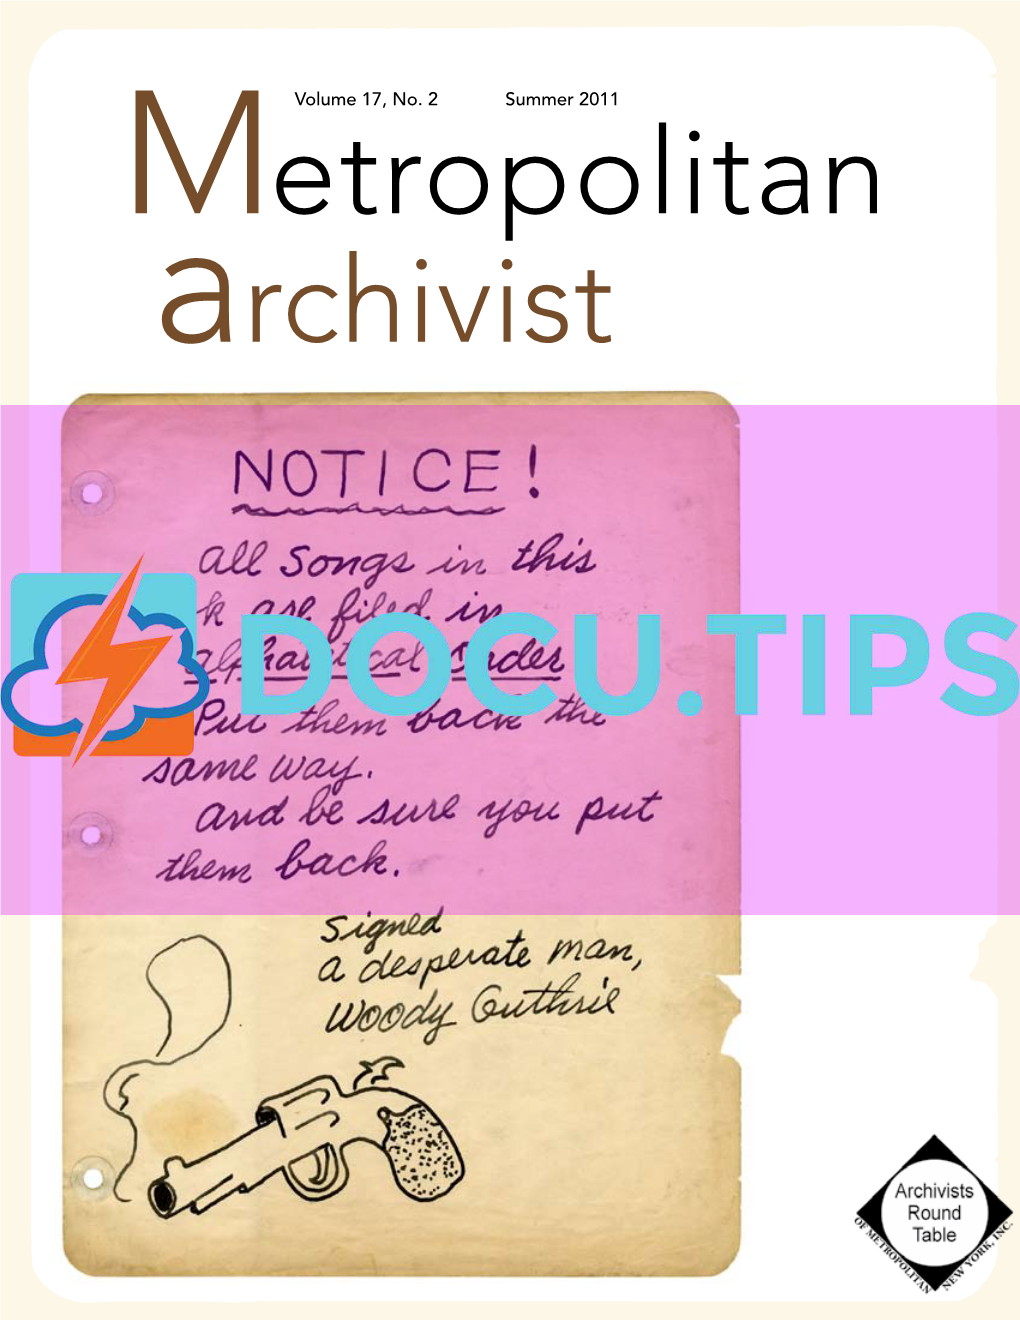 Metropolitan Archivist, Vol. 17, No. 2